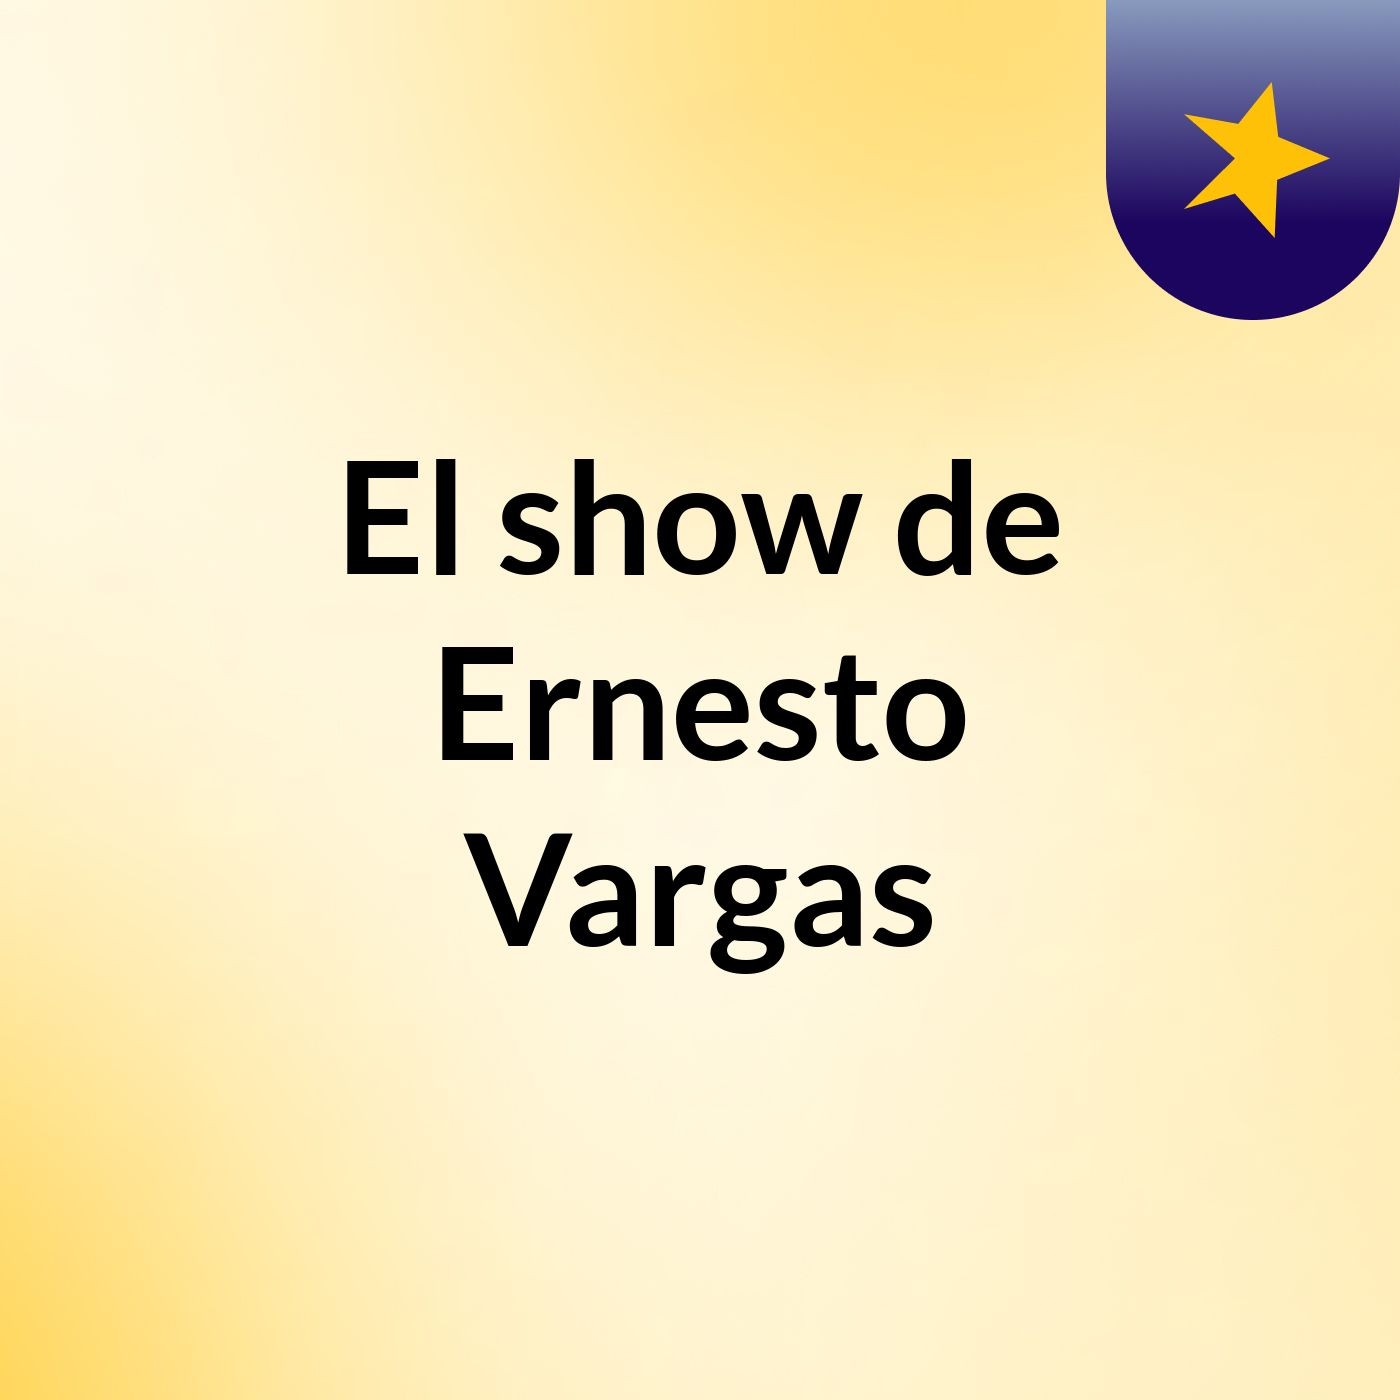 El show de Ernesto Vargas